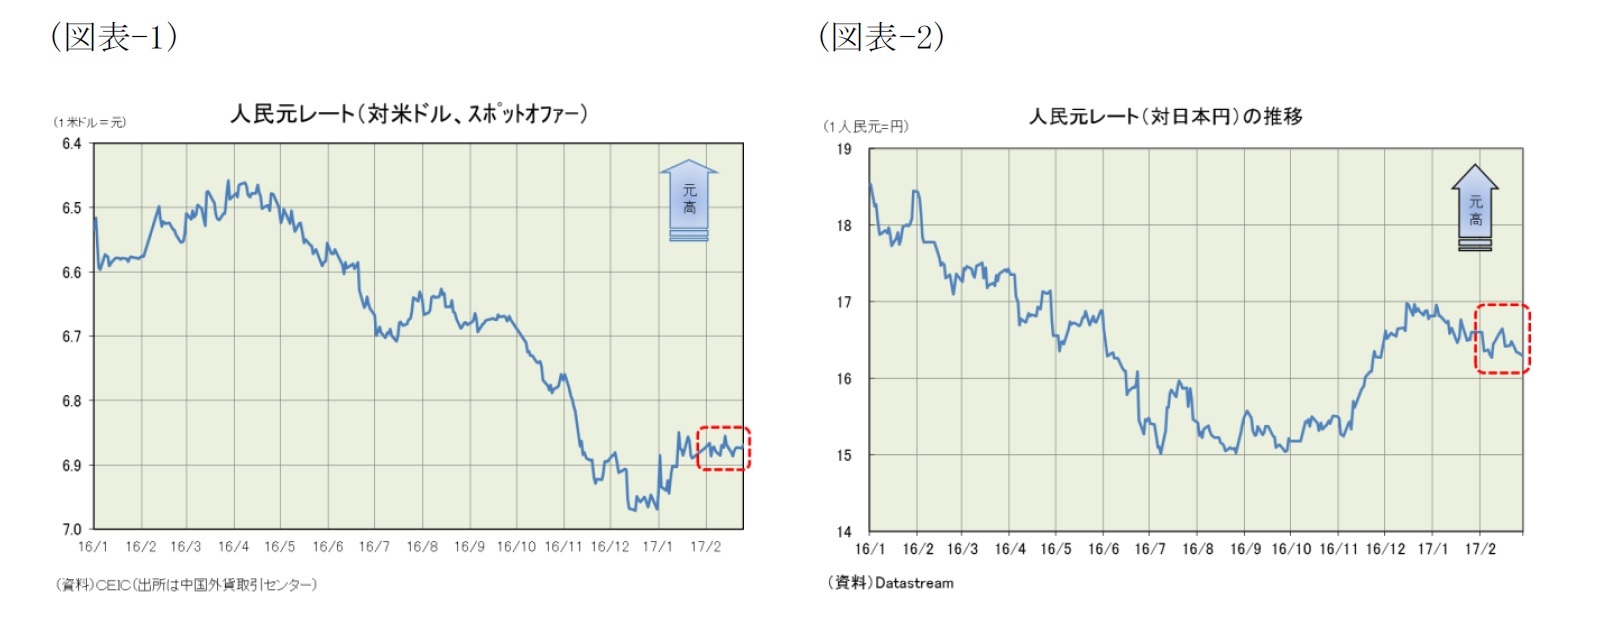 (図表1)人民元レート(対米ドル、スポットオファー)/(図表2)人民元レート(対日本円)の推移